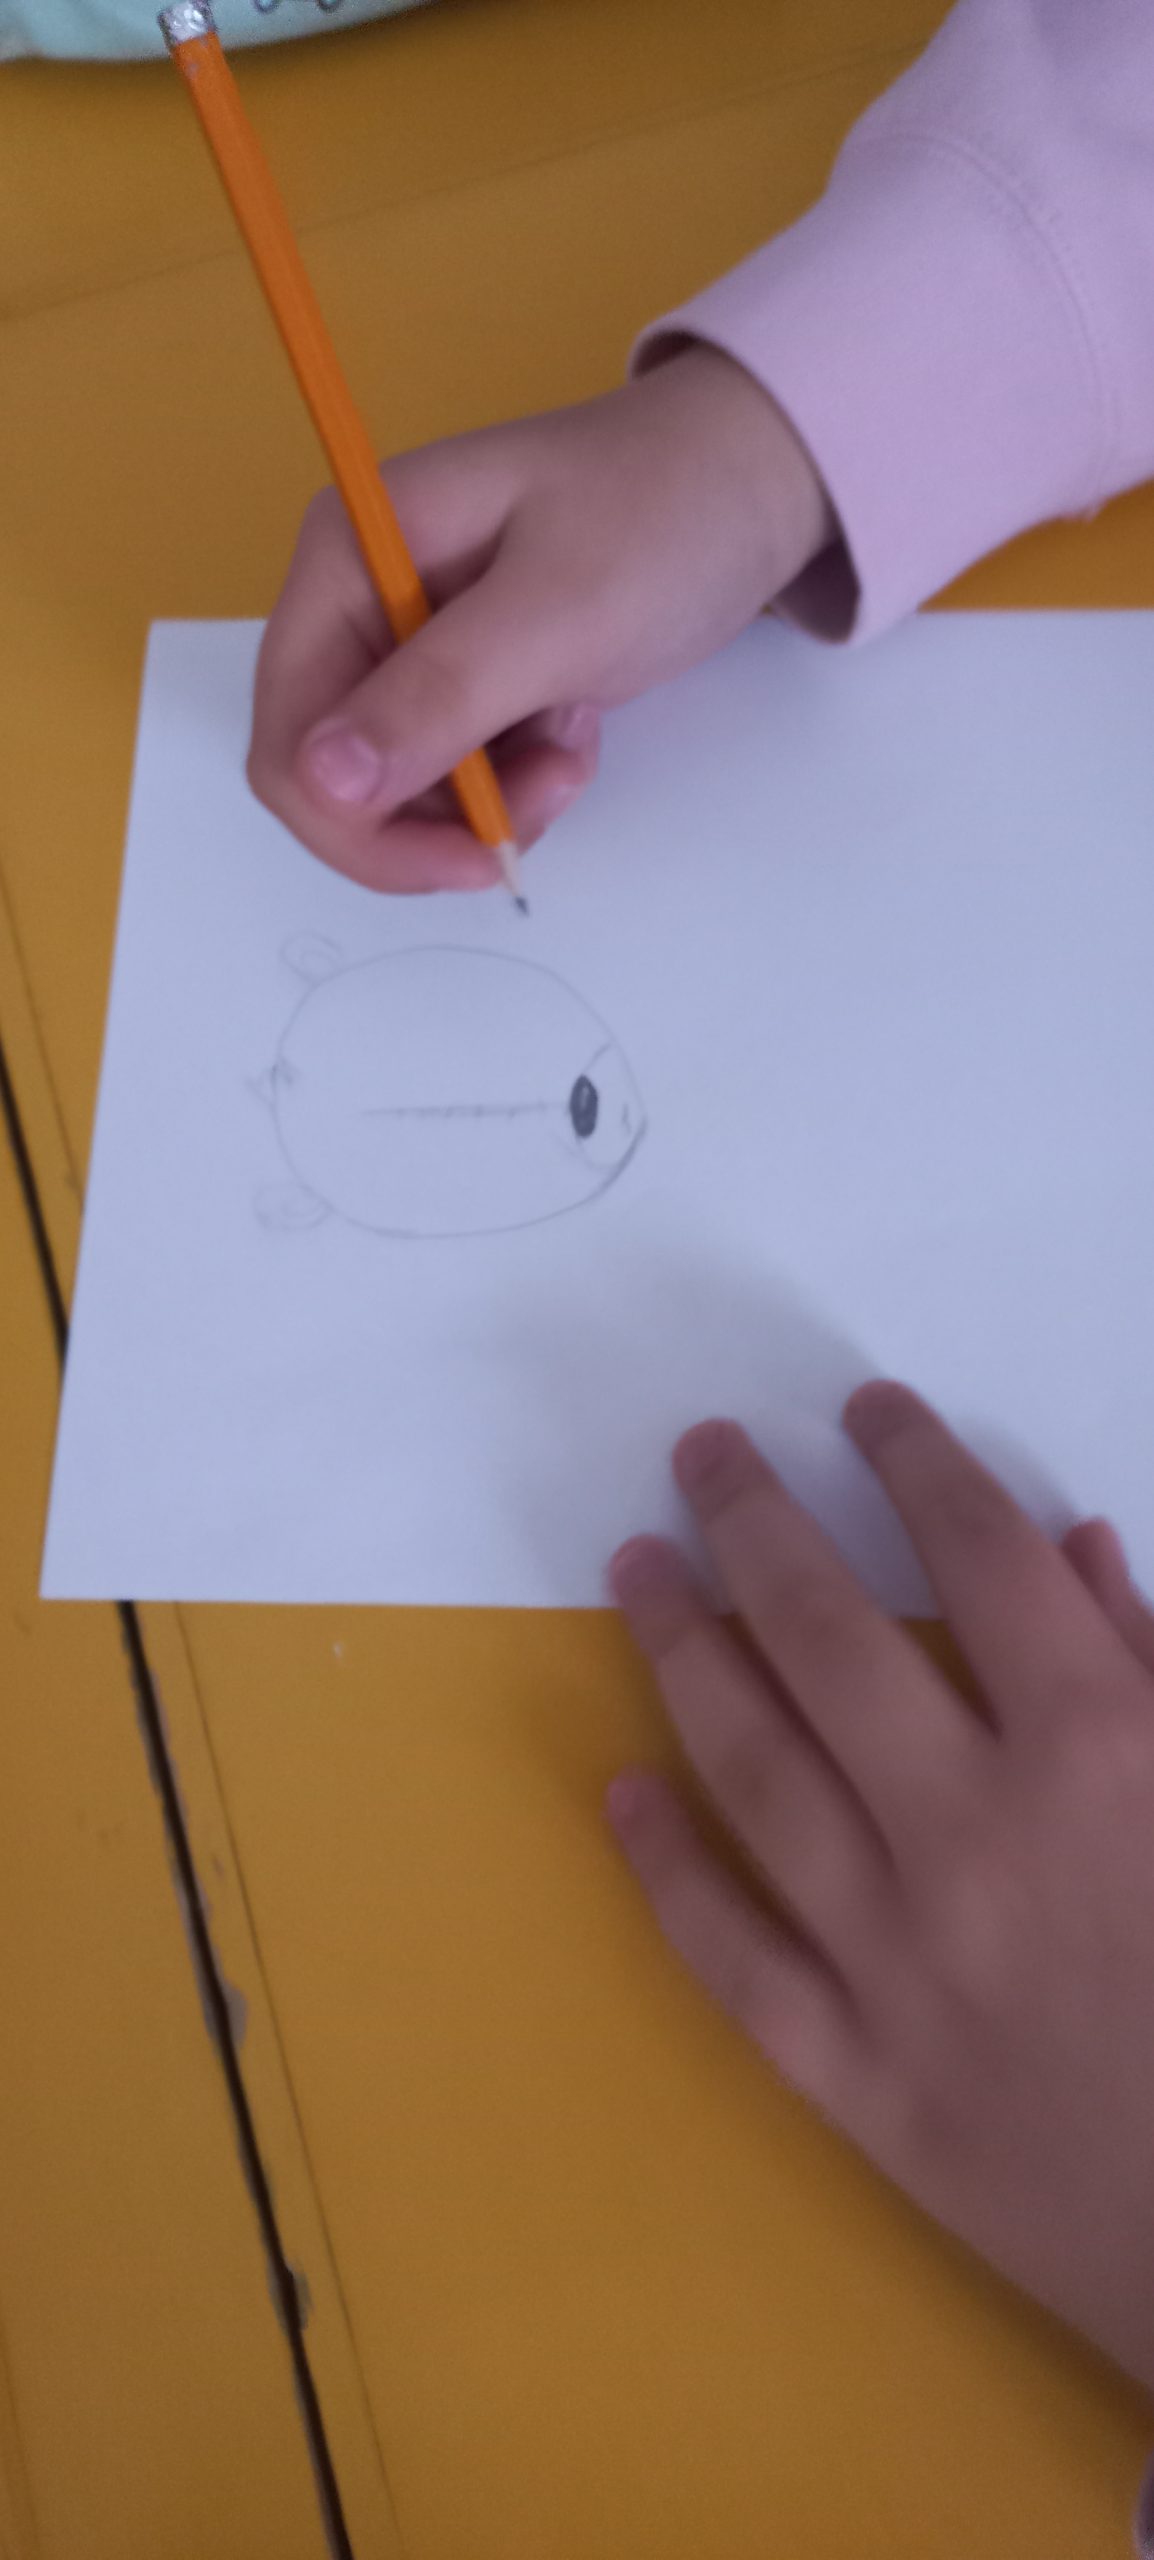 dziecko rysuje misia na białej kartce przy pomocy ołówka